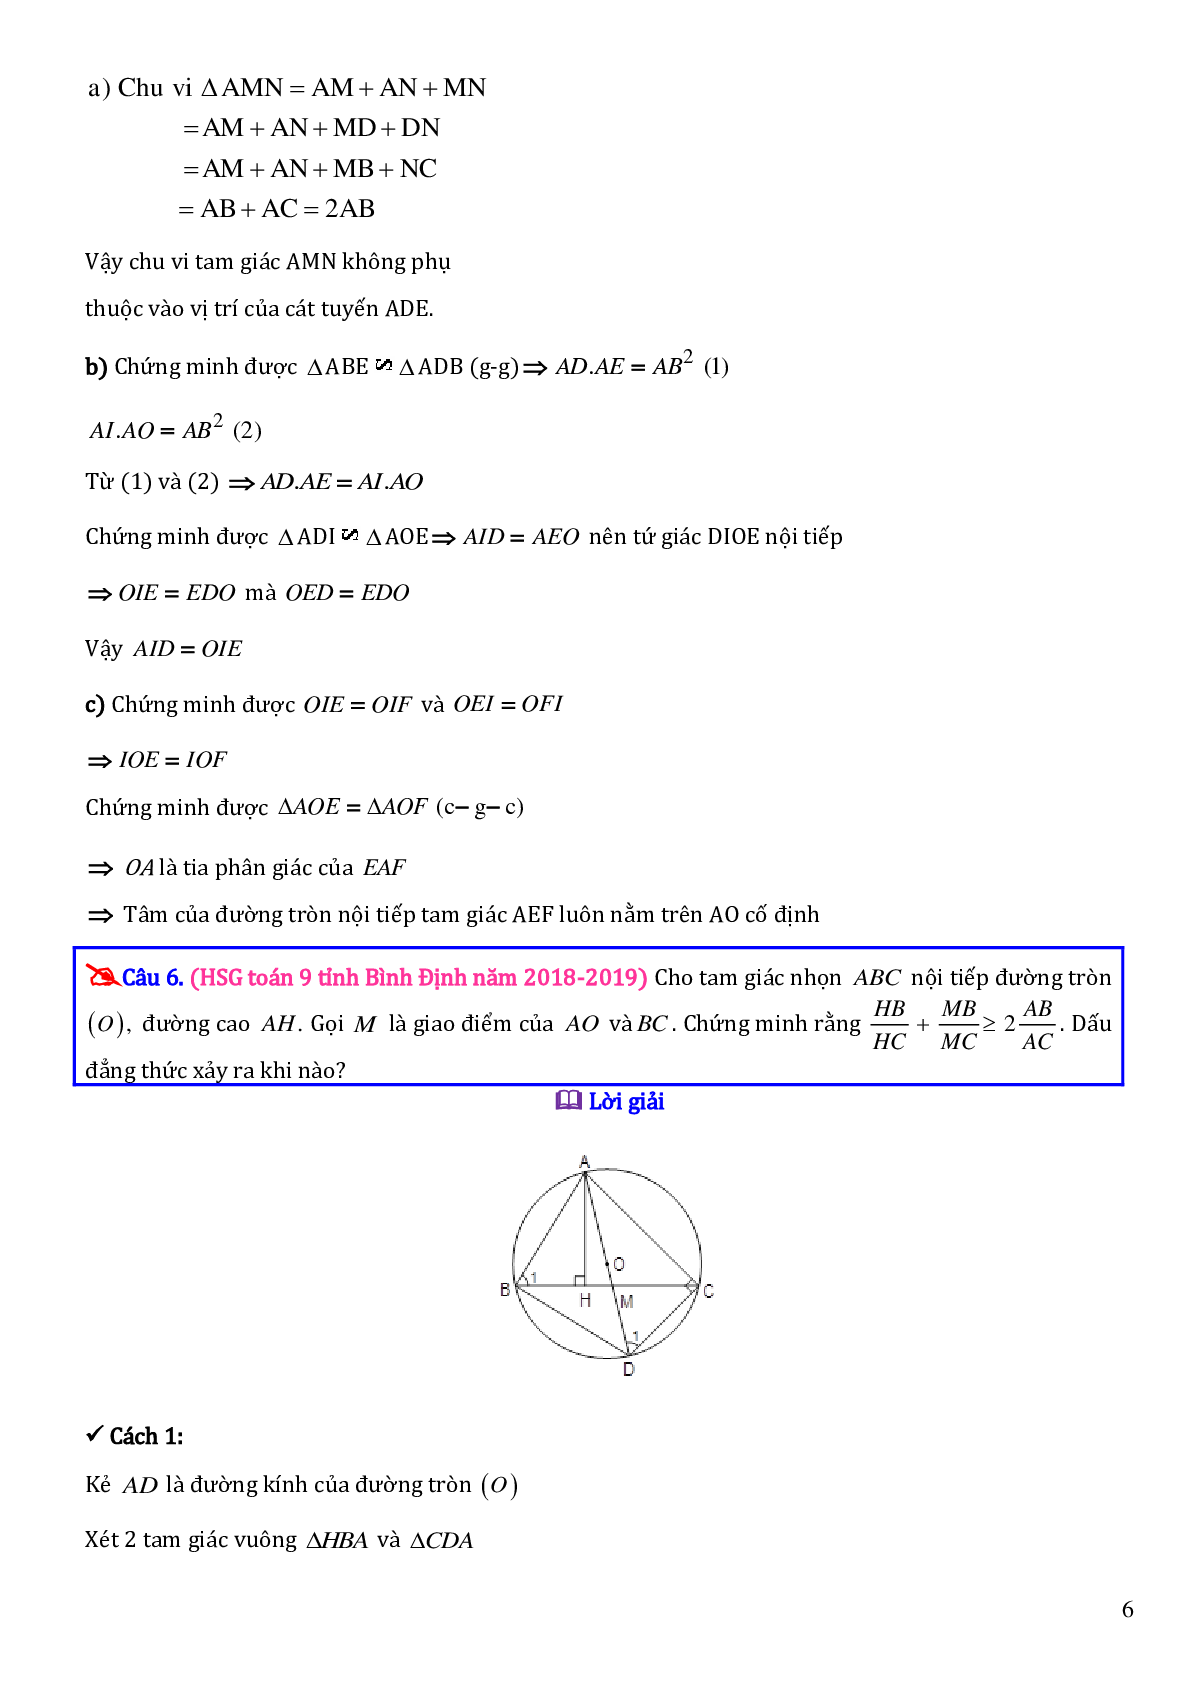 Các bài toán hình học trong đề thi học sinh giỏi toán lớp 9 (trang 6)